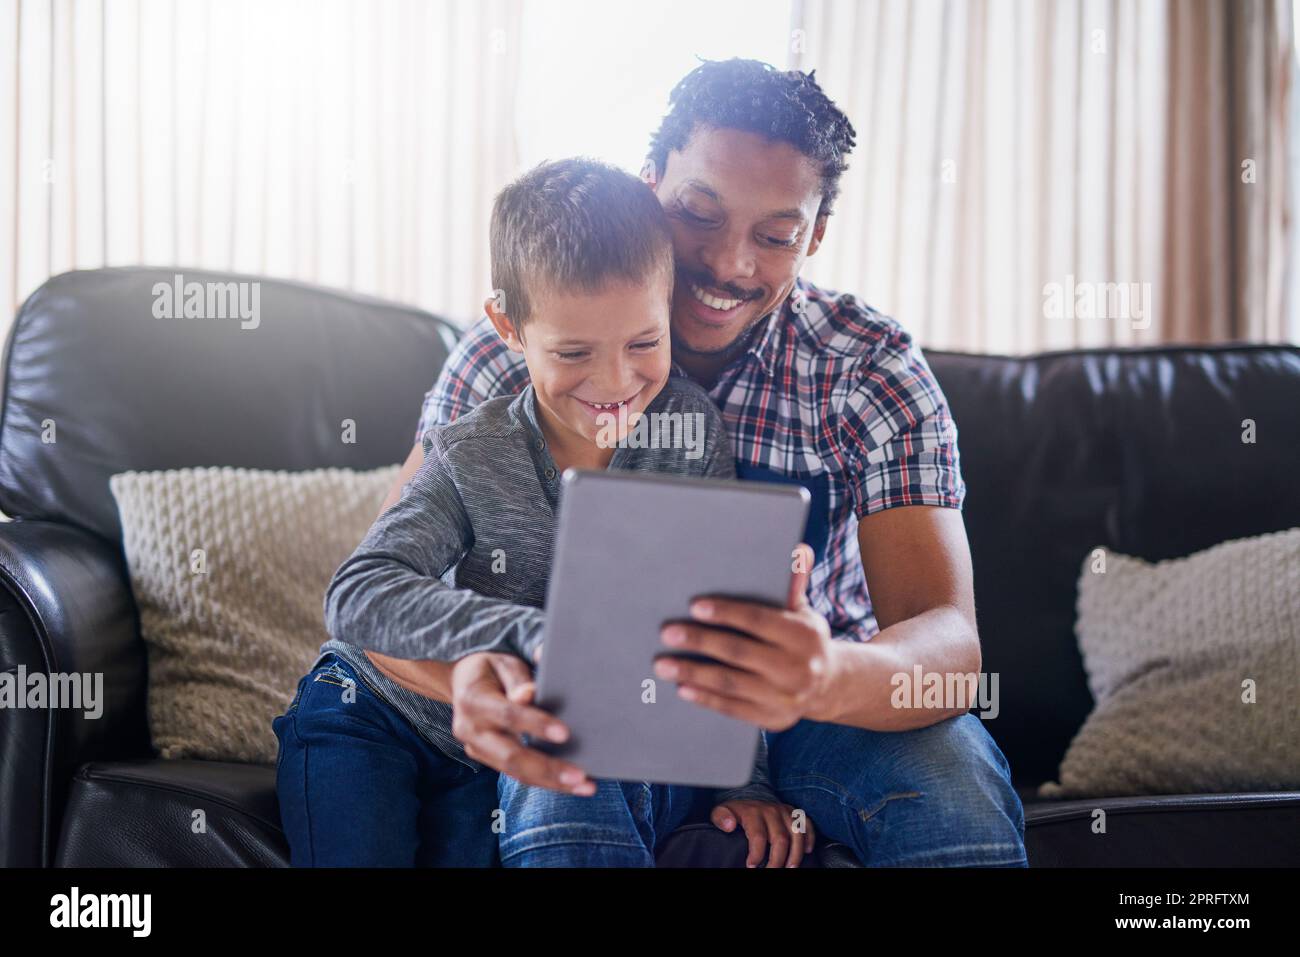 Es gibt immer etwas unterhaltsames online zu sehen. Ein Vater und Sohn mit einem digitalen Tablet zu Hause. Stockfoto